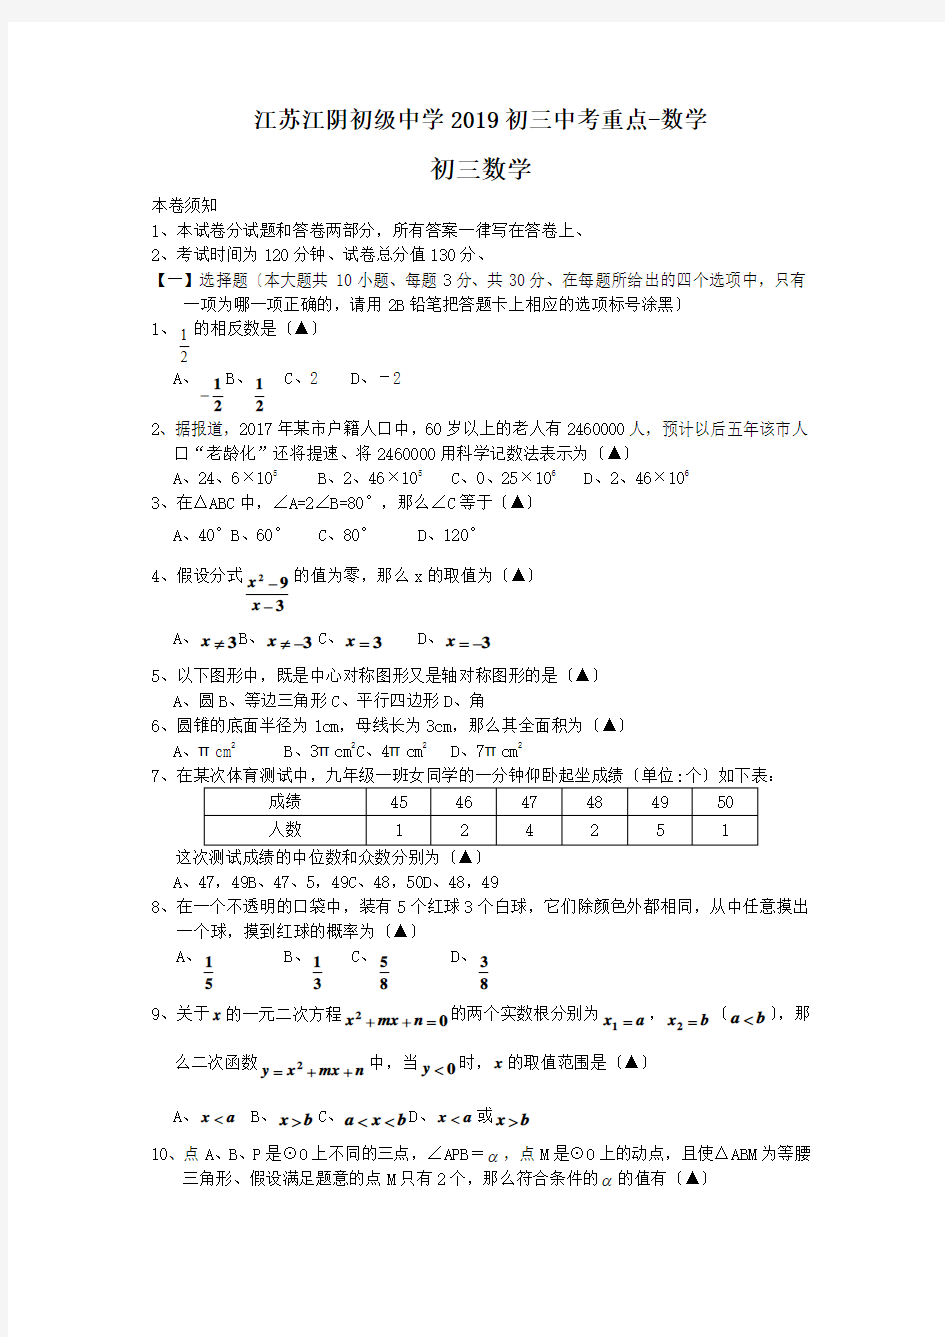 江苏江阴初级中学2019初三中考重点-数学